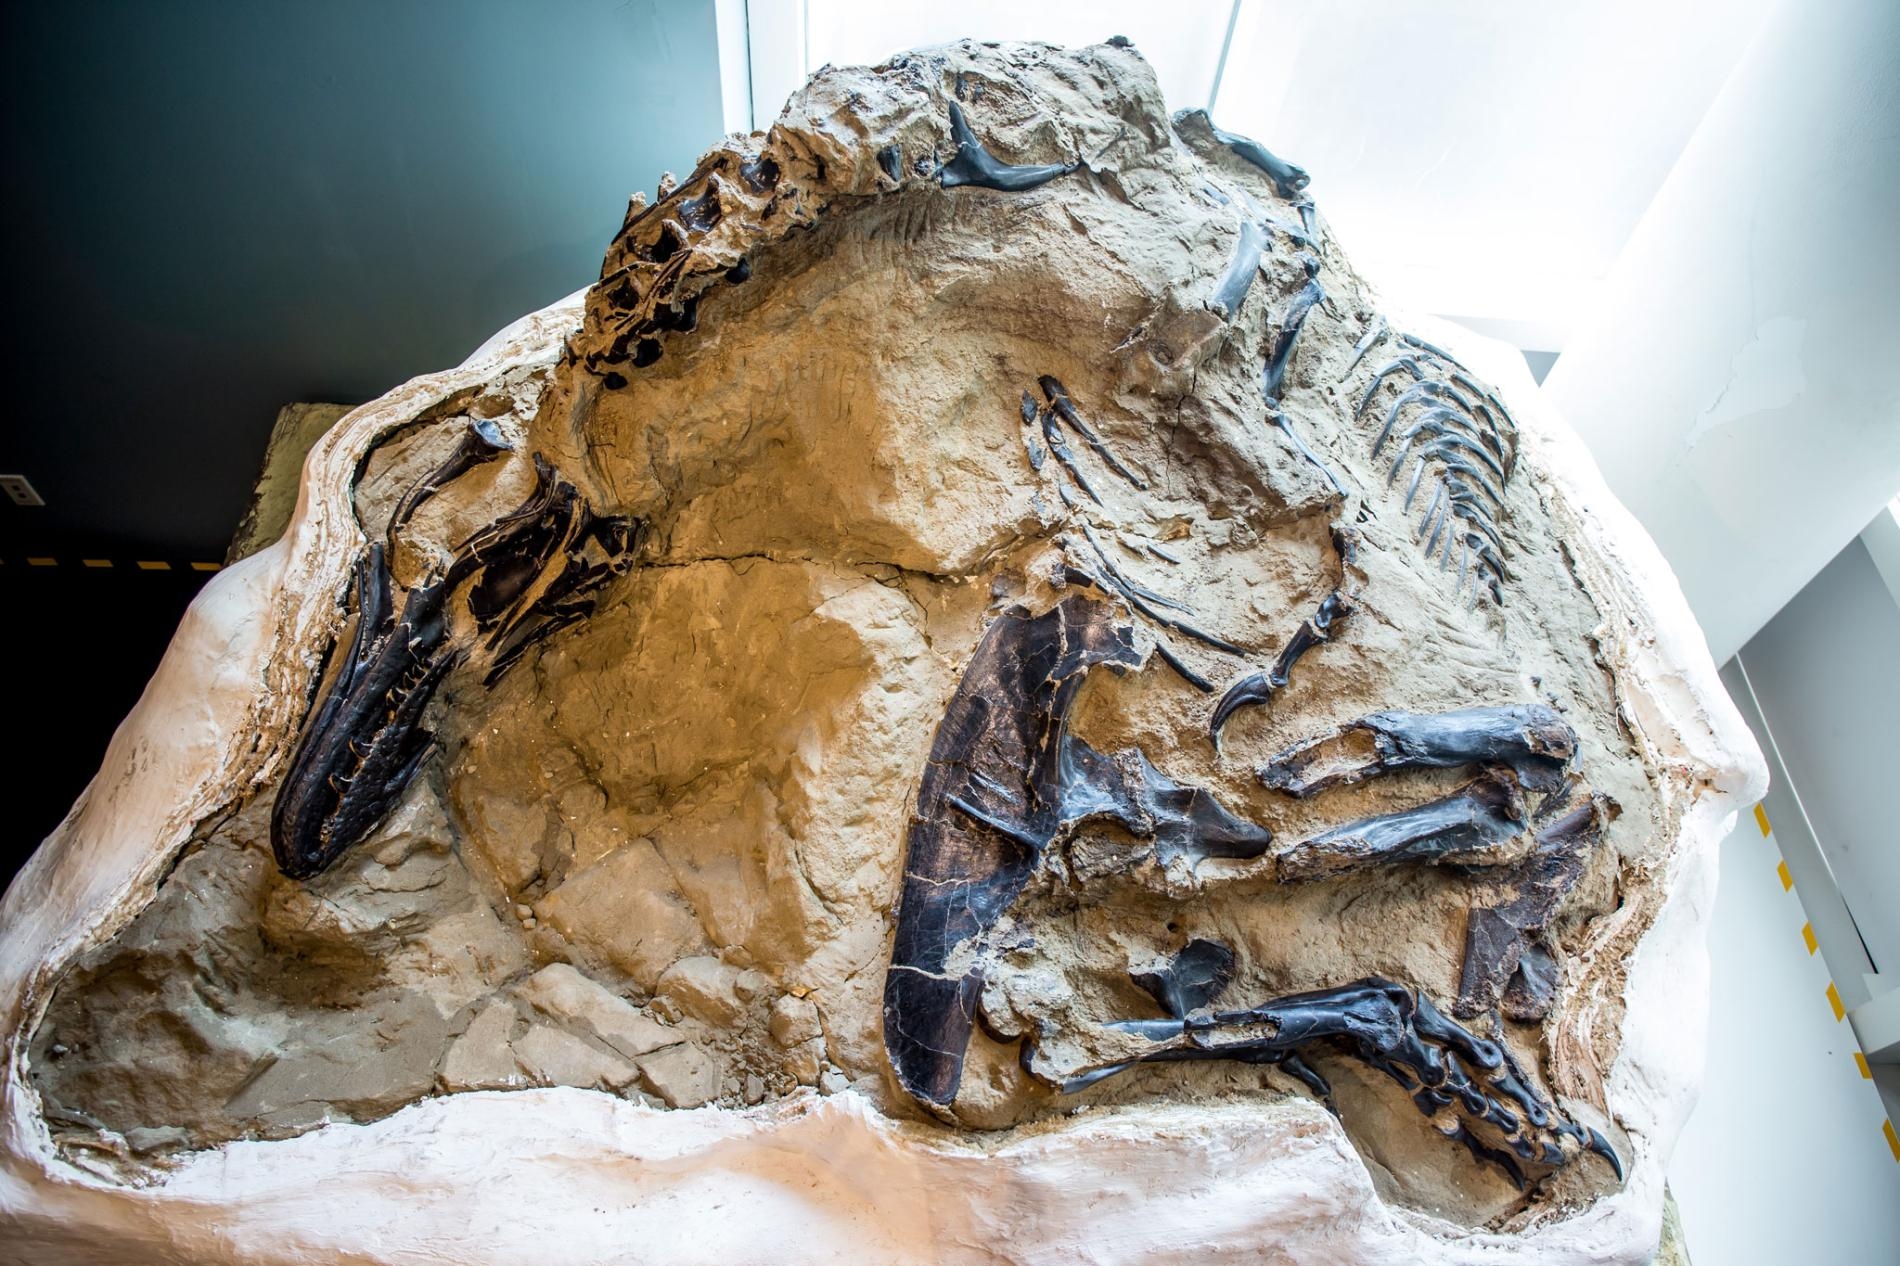 2006年，商業化石獵人發現了這副幾近完整的精美暴龍化石，旁邊還躺著一隻植食性三角龍骨骸。最近，美國北卡羅來納州的博物館取得了這對史前化石，科學家首度有機會開始研究這副化石。 PHOTOGRAPH BY MATT ZEHER